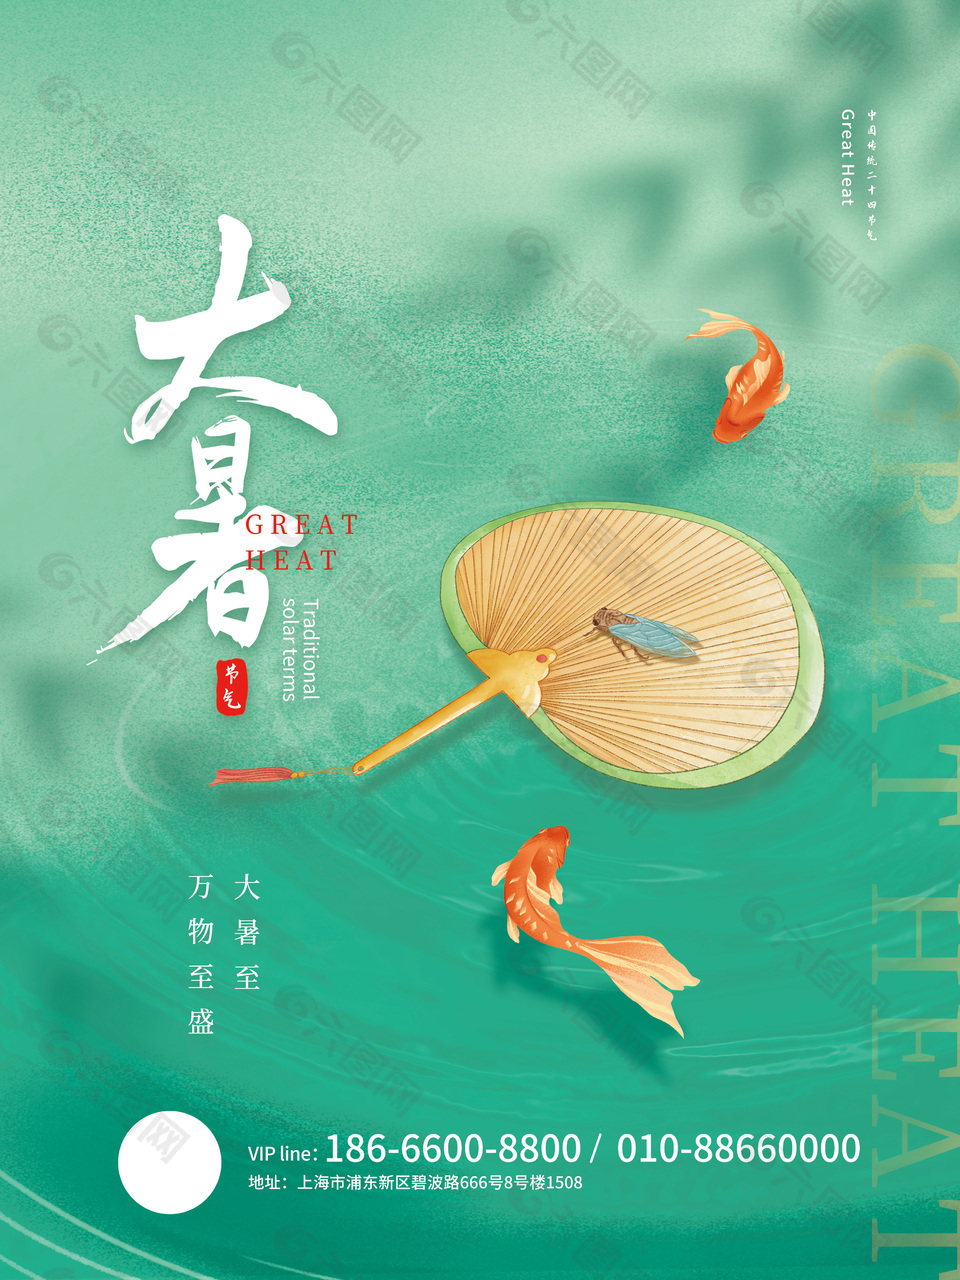 夏季大暑节气锦鲤插画绿色海报下载